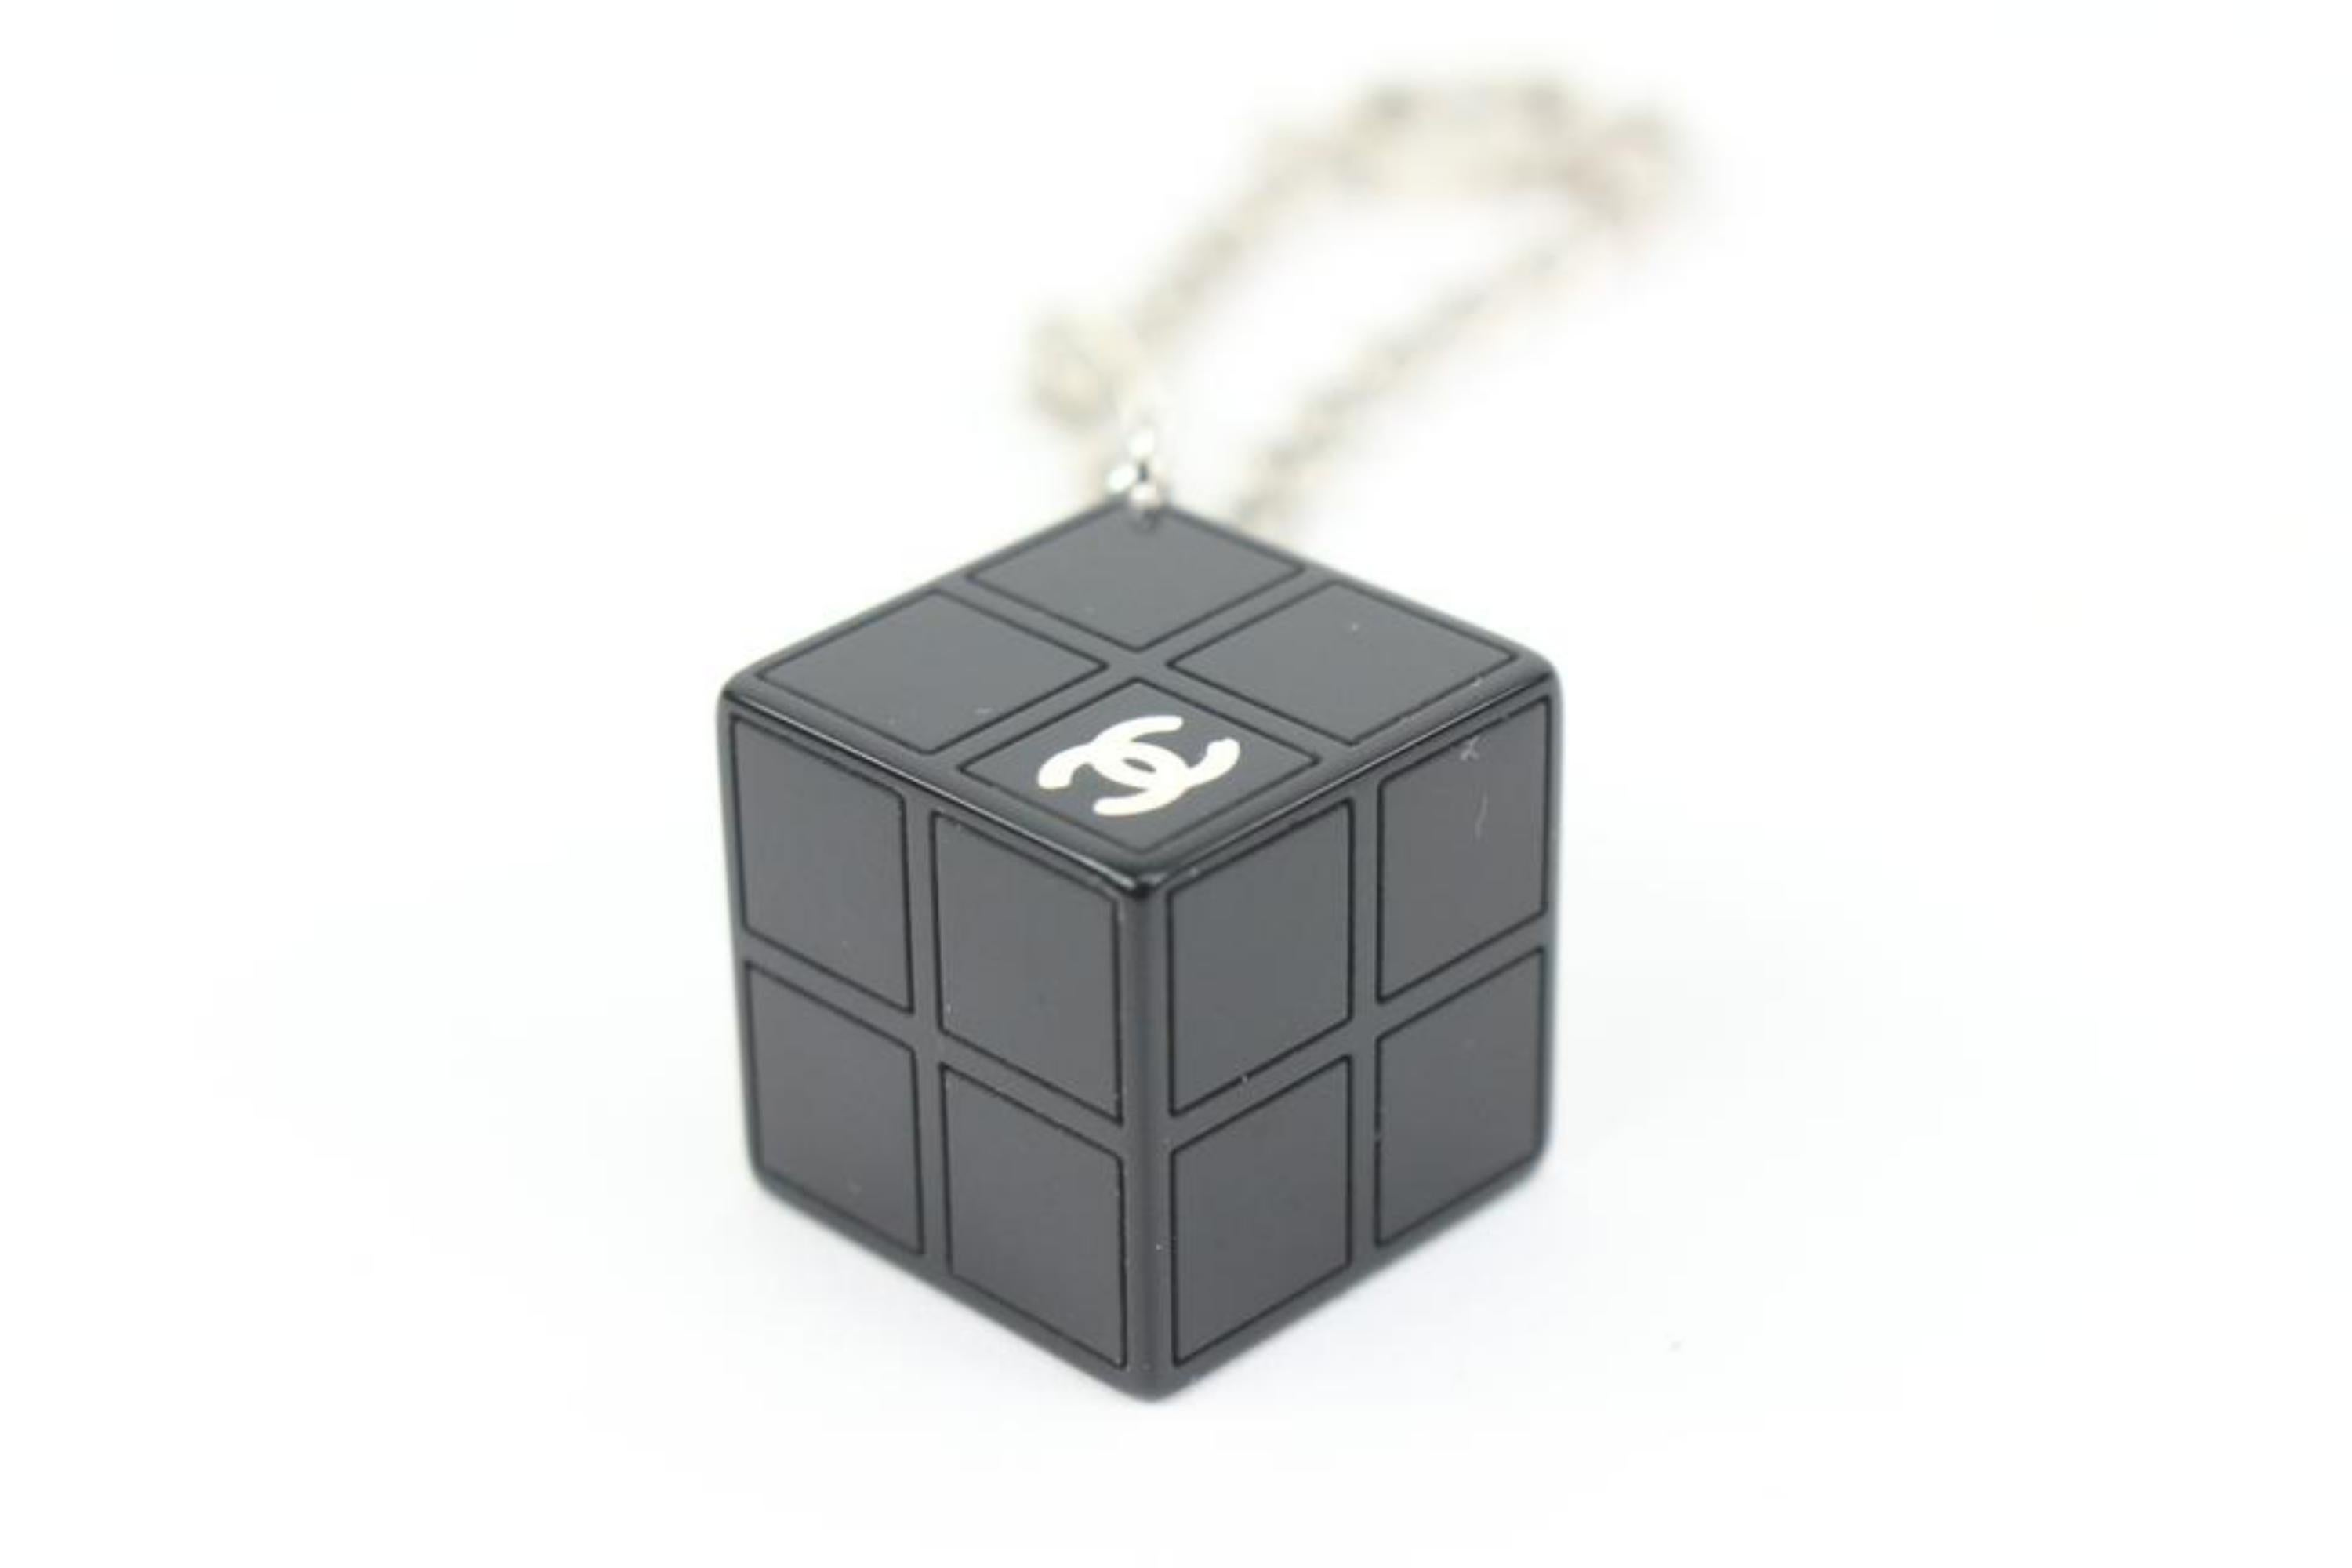 Chanel 04s Schwarz x Silber CC Logo Cube Block Armband 16ck311s
Datum Code/Seriennummer: 04 S
Hergestellt in: Italien
Maße: Länge:  7.5